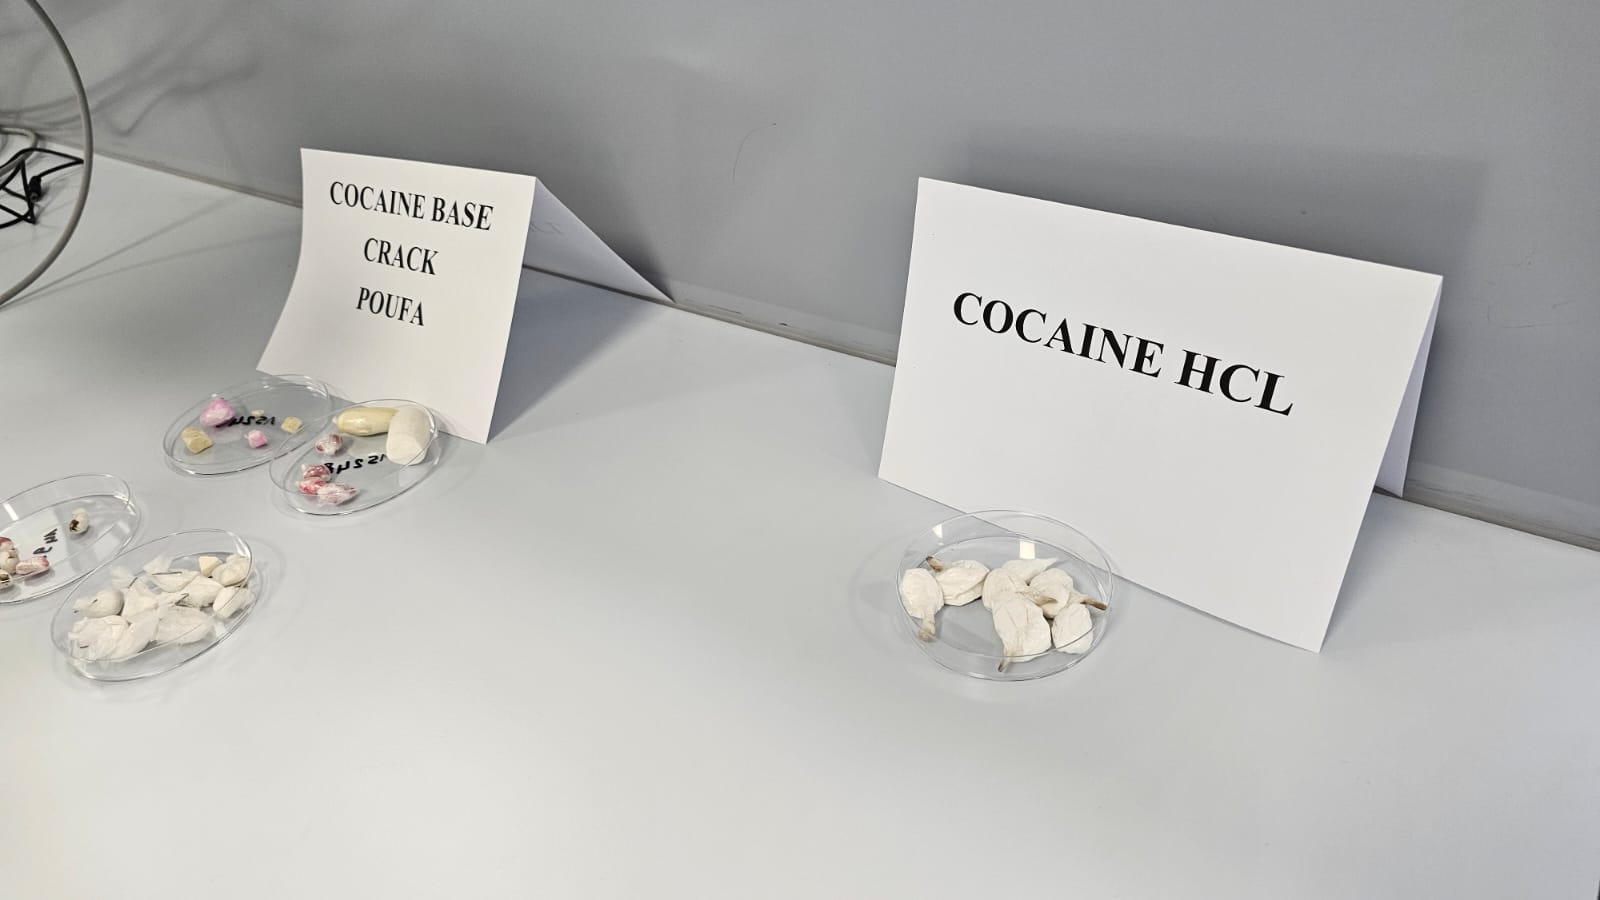 عينات من الكوكايين و"البوفا" و"الكراك"